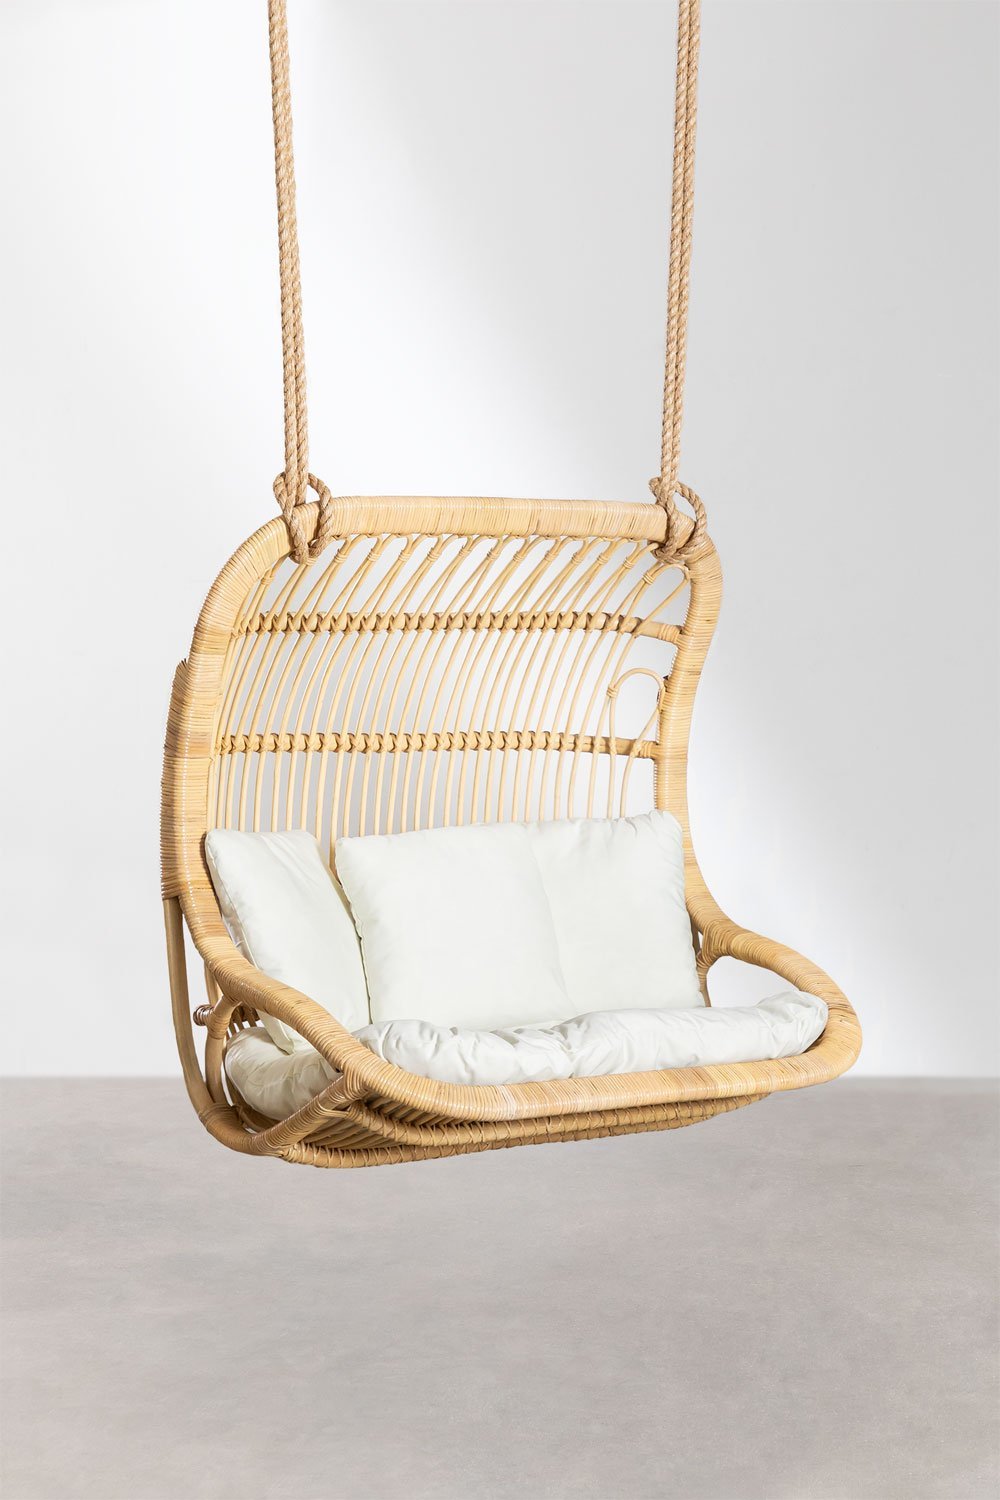 Hangende fauteuil in Taveira rotan, galerij beeld 1